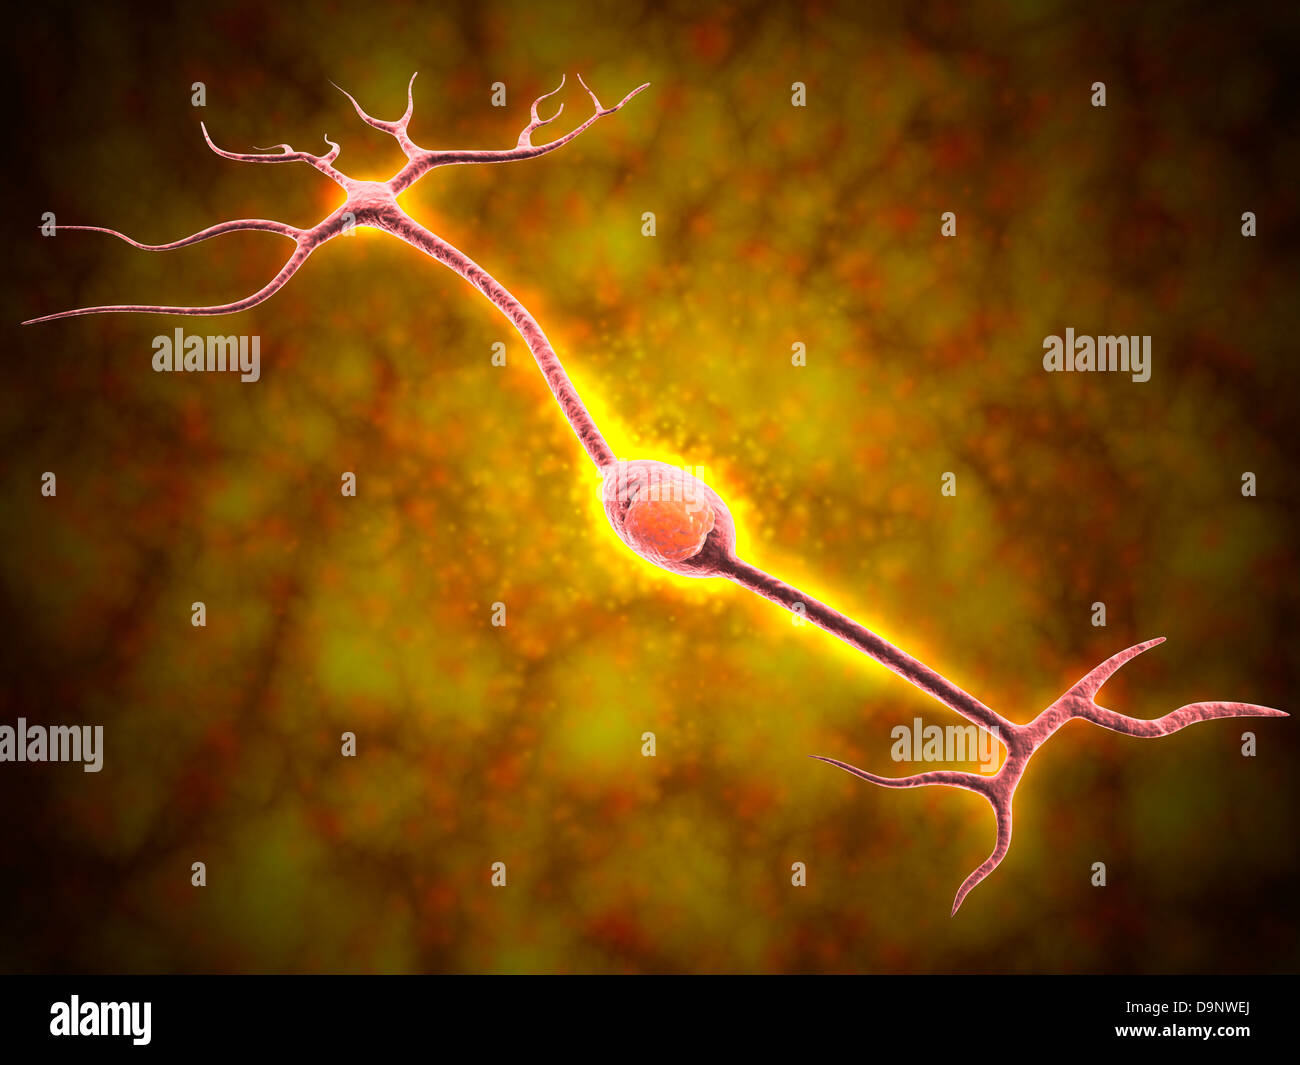 Mikroskopische Ansicht eines bipolaren Neurons Stockfoto